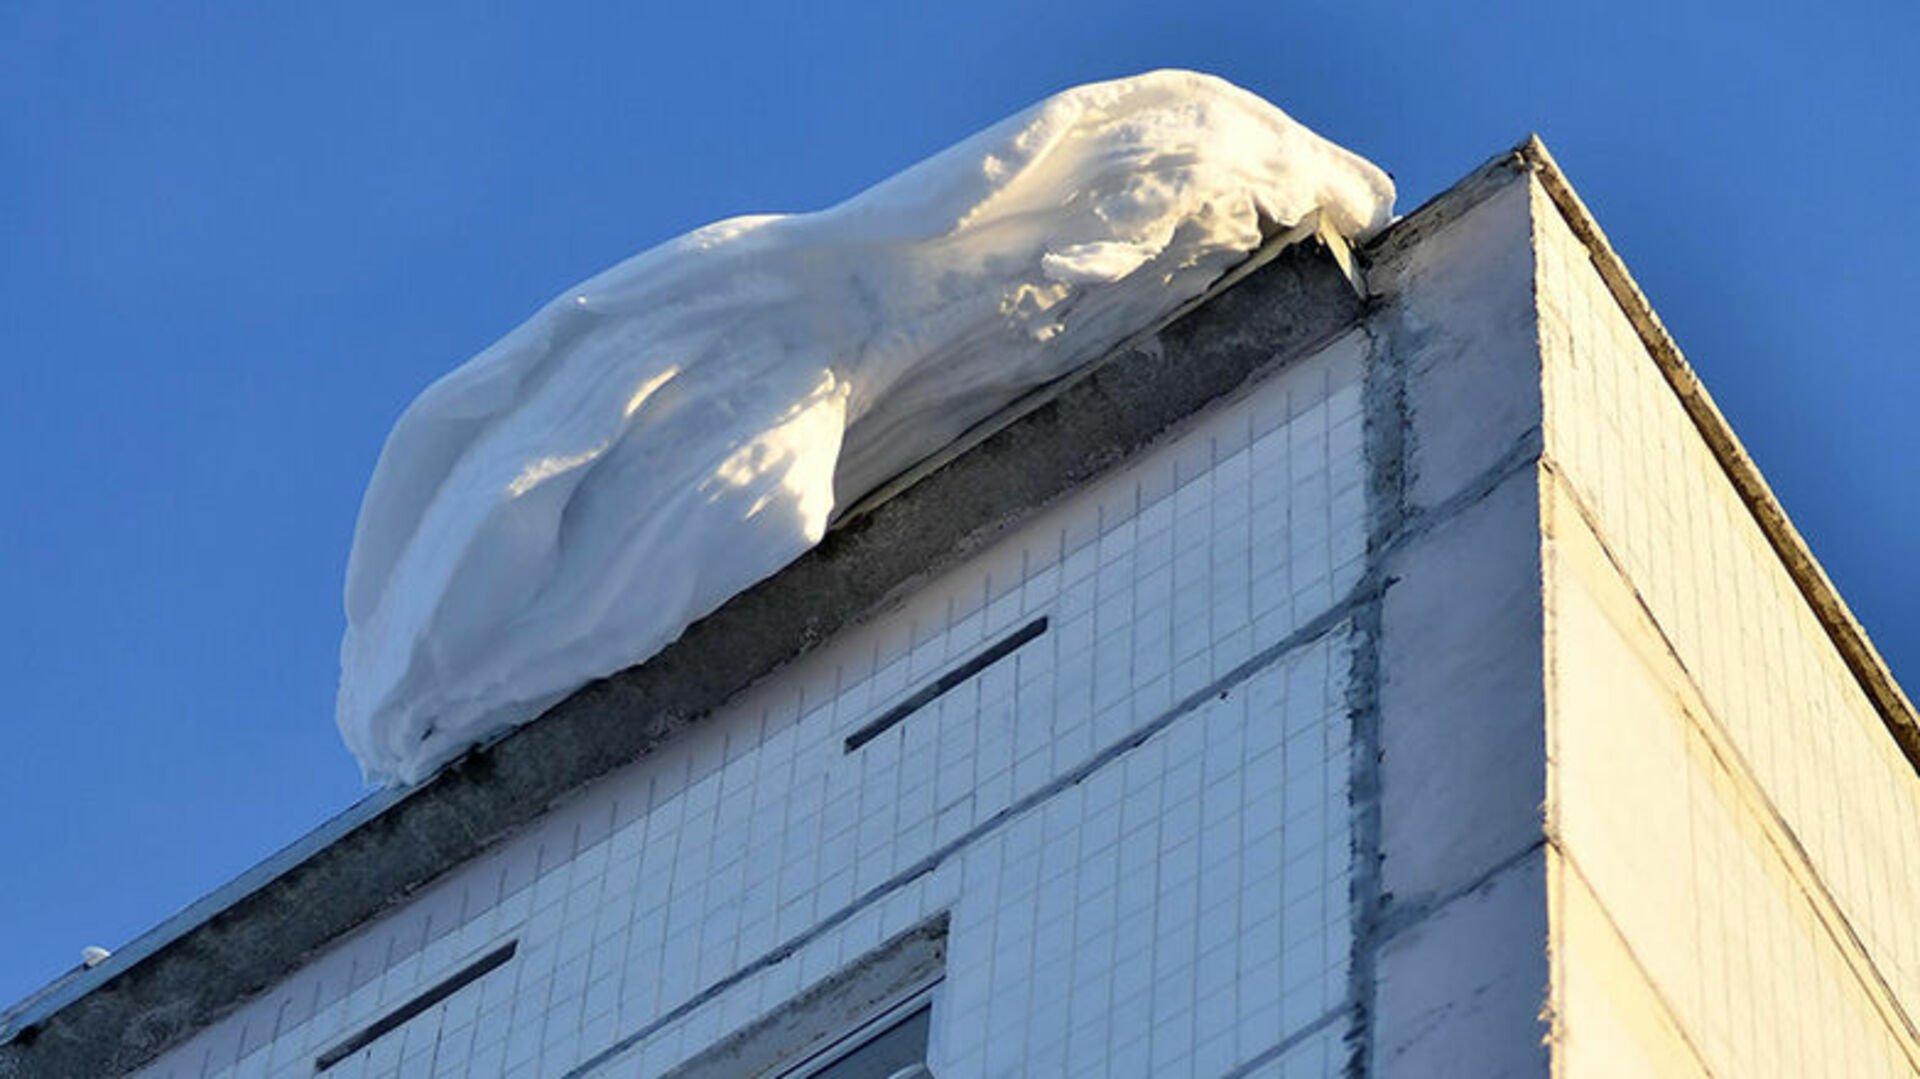 Как падает снег с крыши